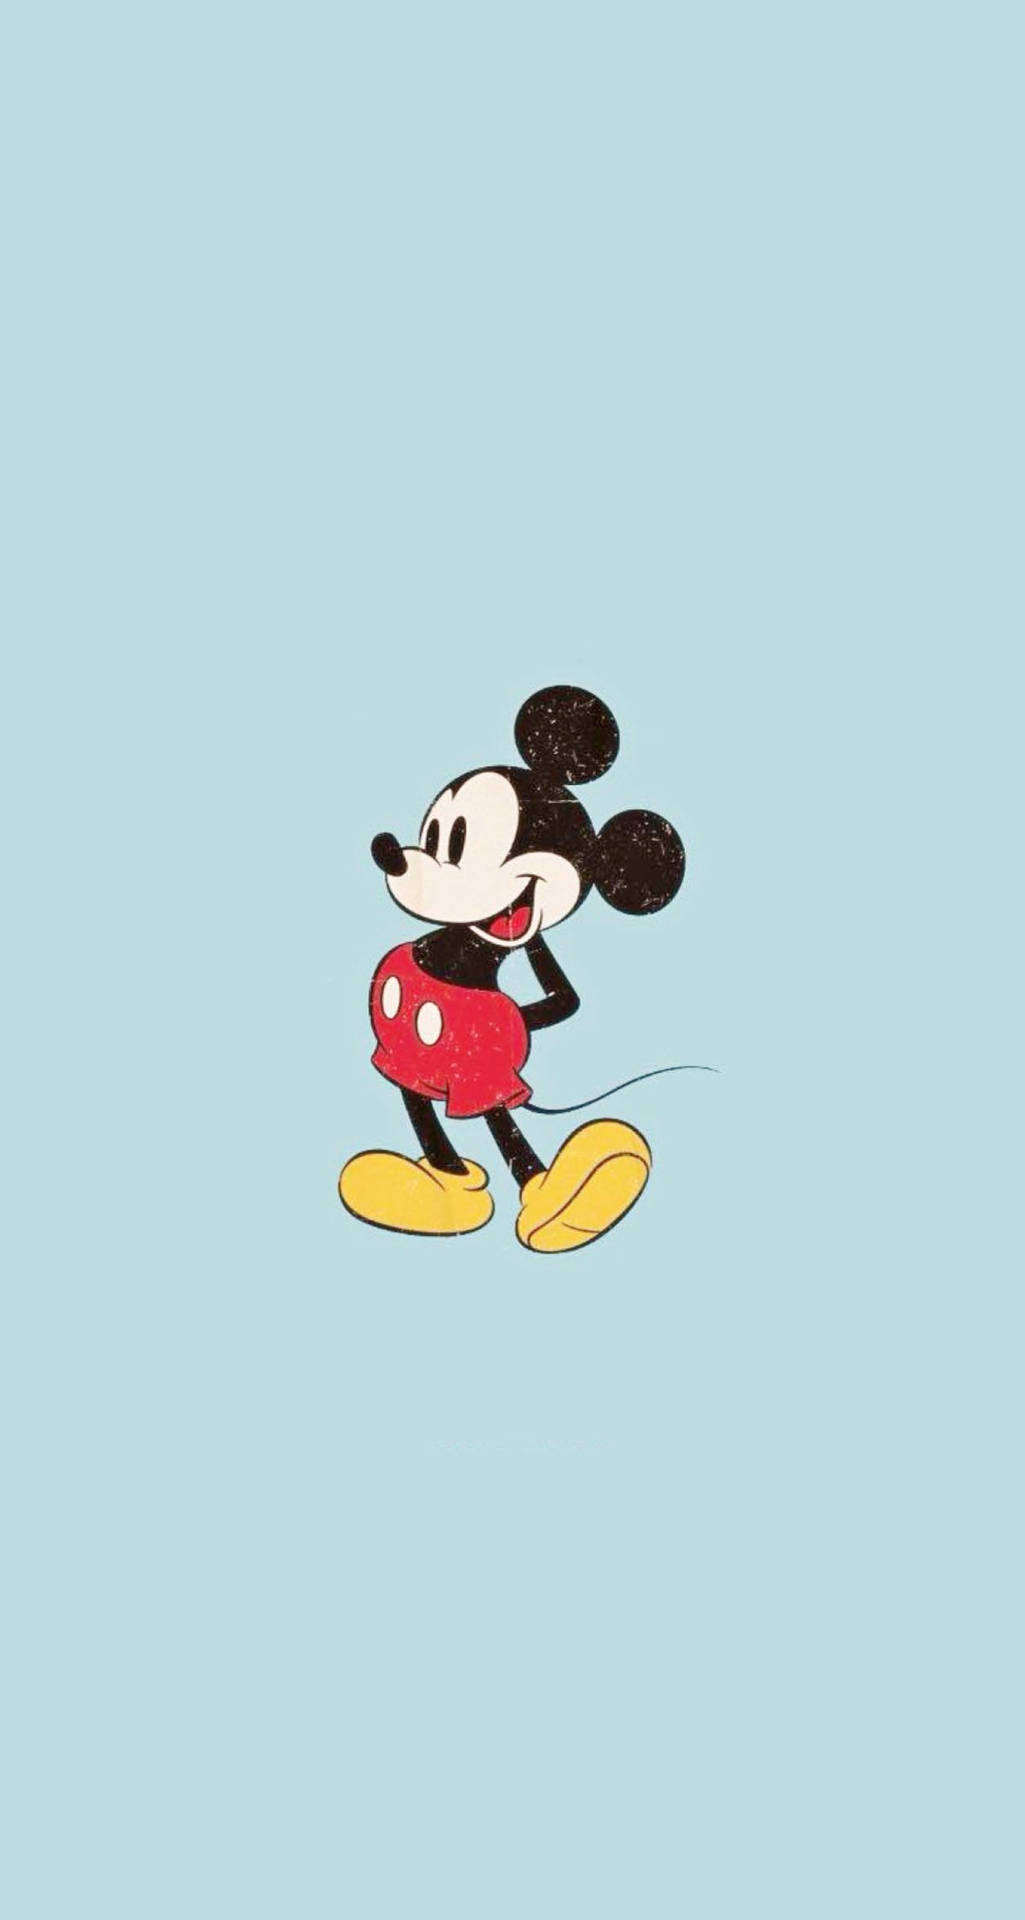 Klassischermickey Mouse Iphone X Cartoon Wallpaper